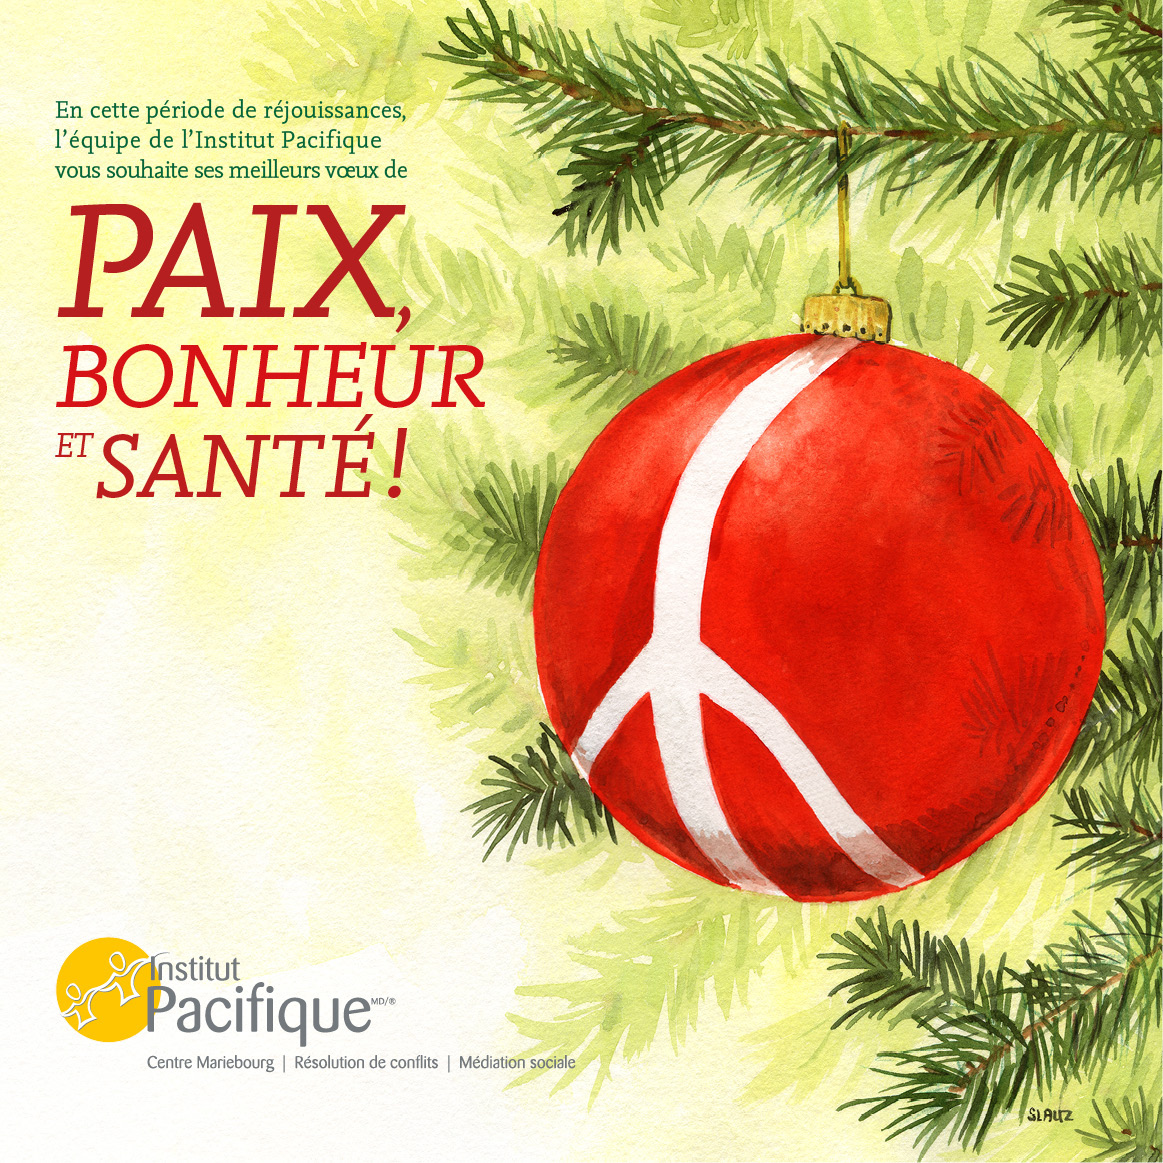 Carte de Noël christmas card Holiday stephane lauzon slauz paix peace Institut Pacifique